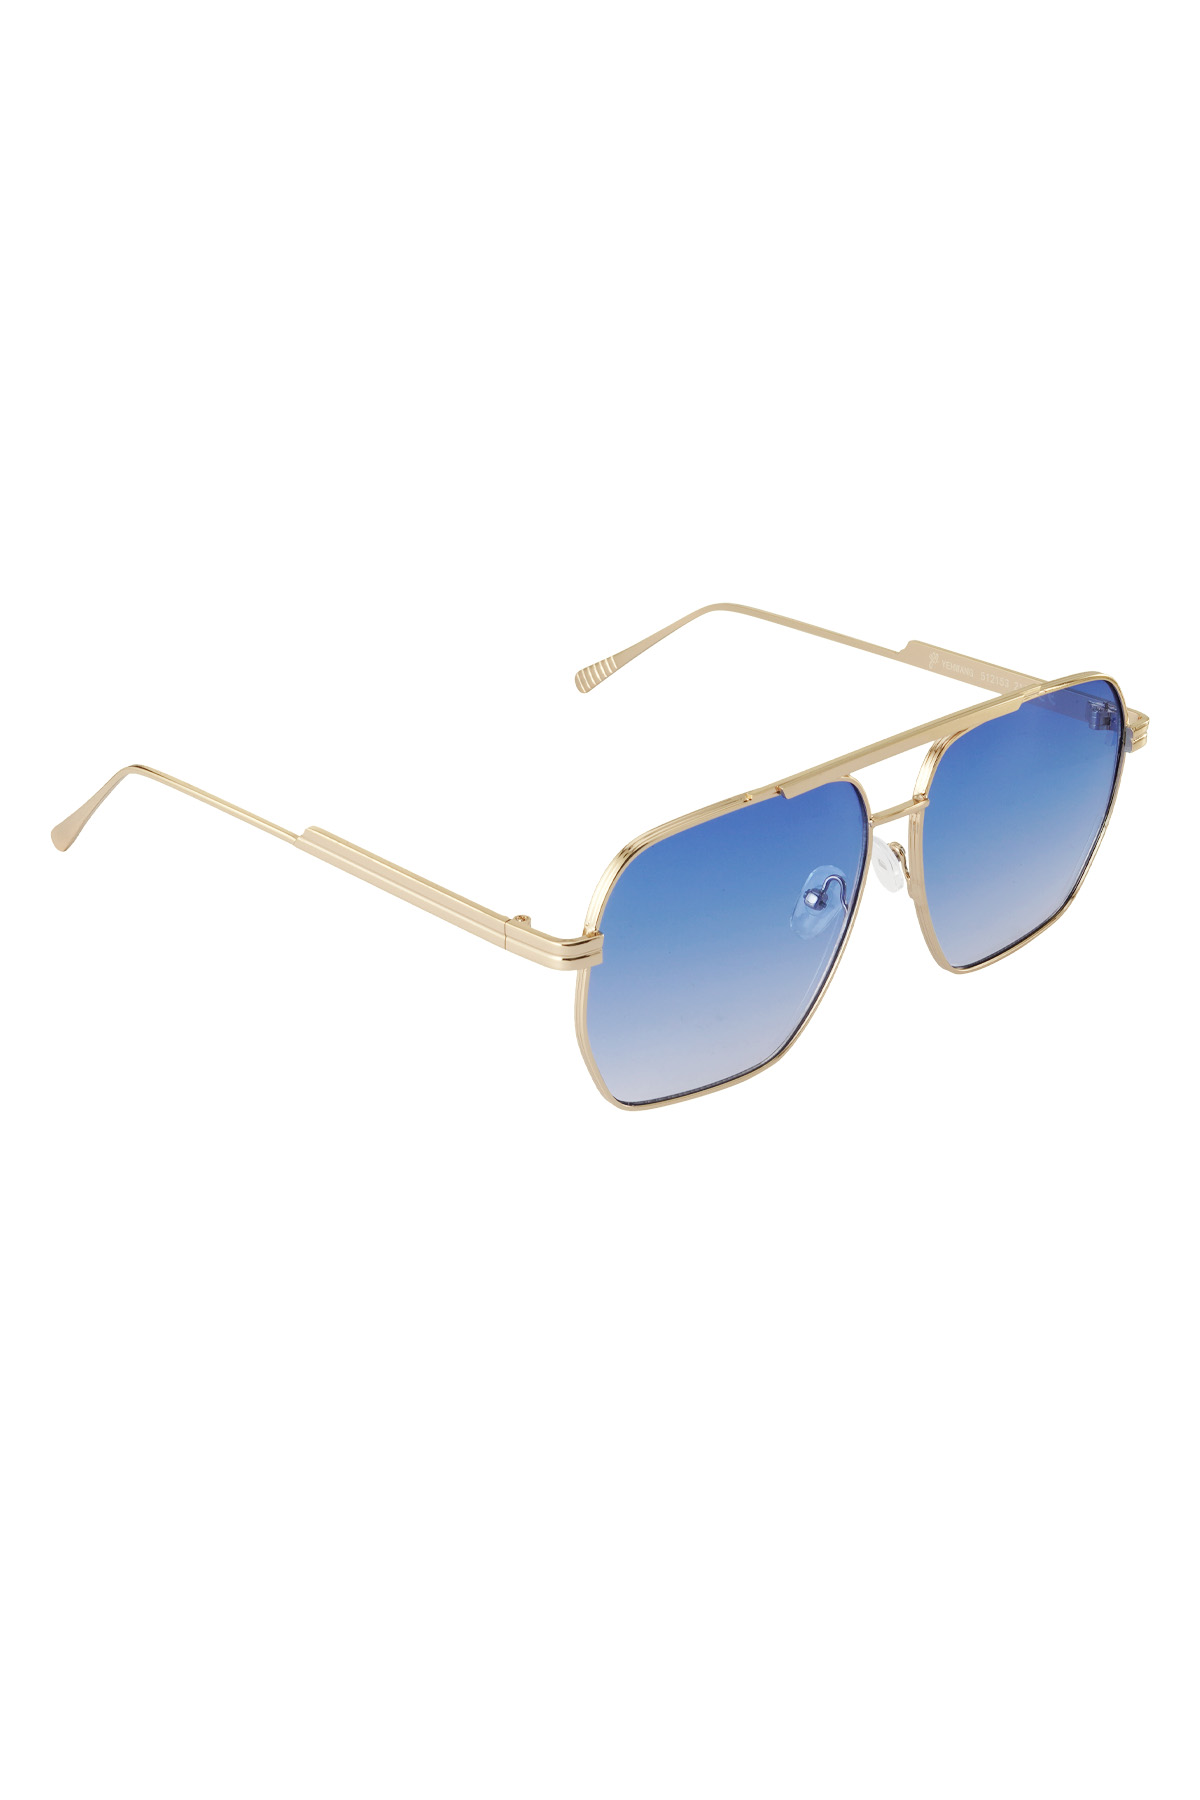 Metal yazlık güneş gözlüğü - Mavi ve altın rengi